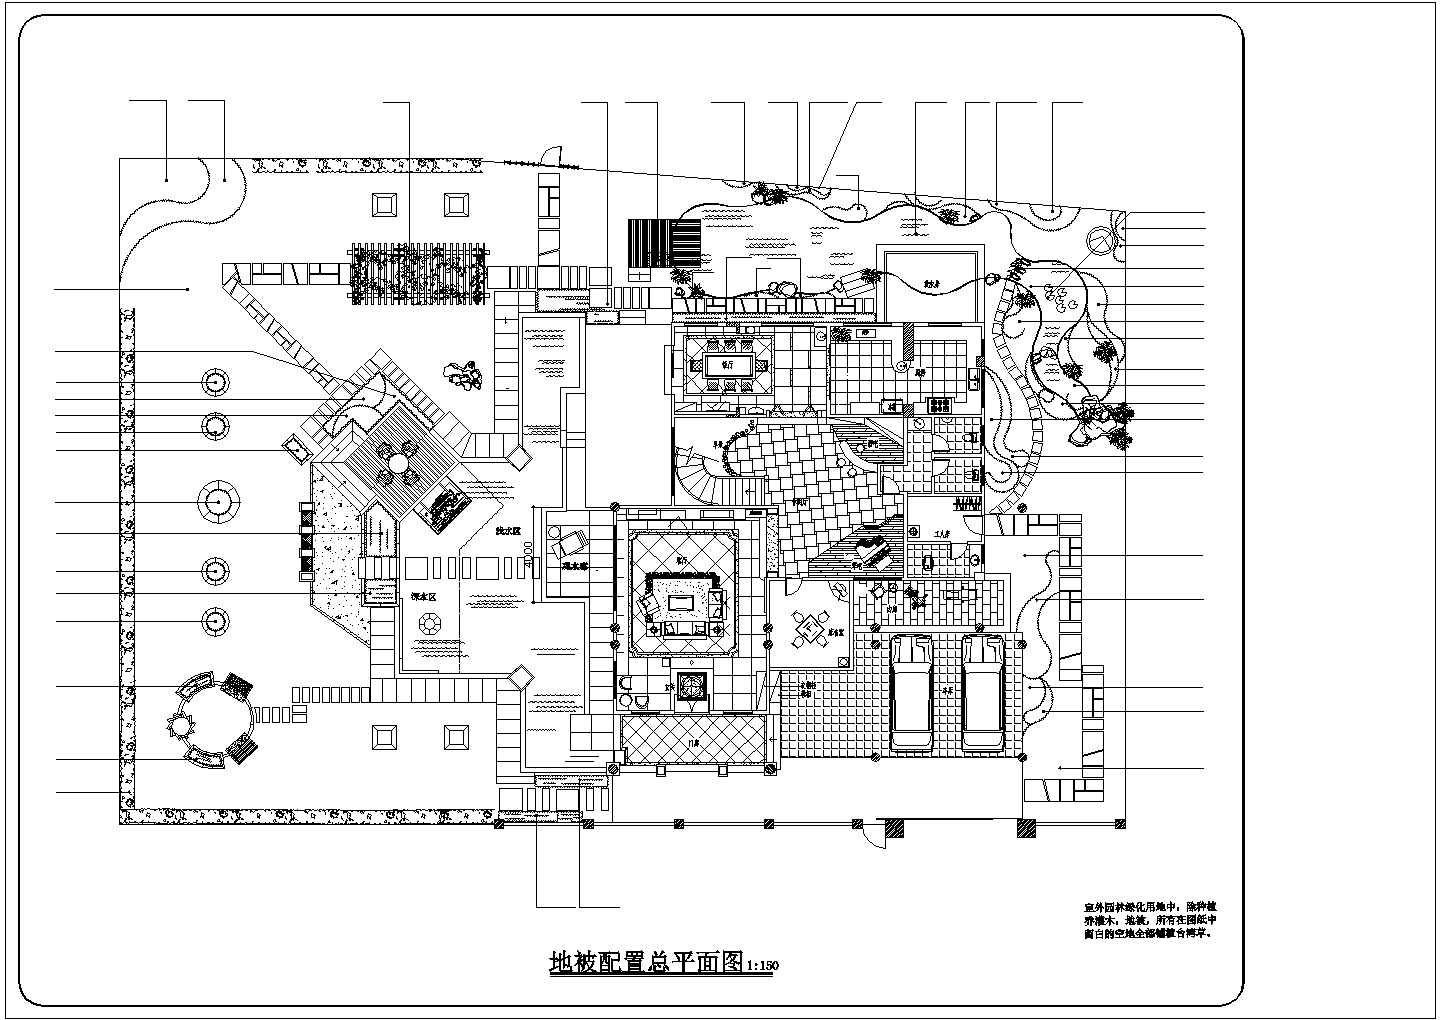 一套完整别墅建筑CAD施工图